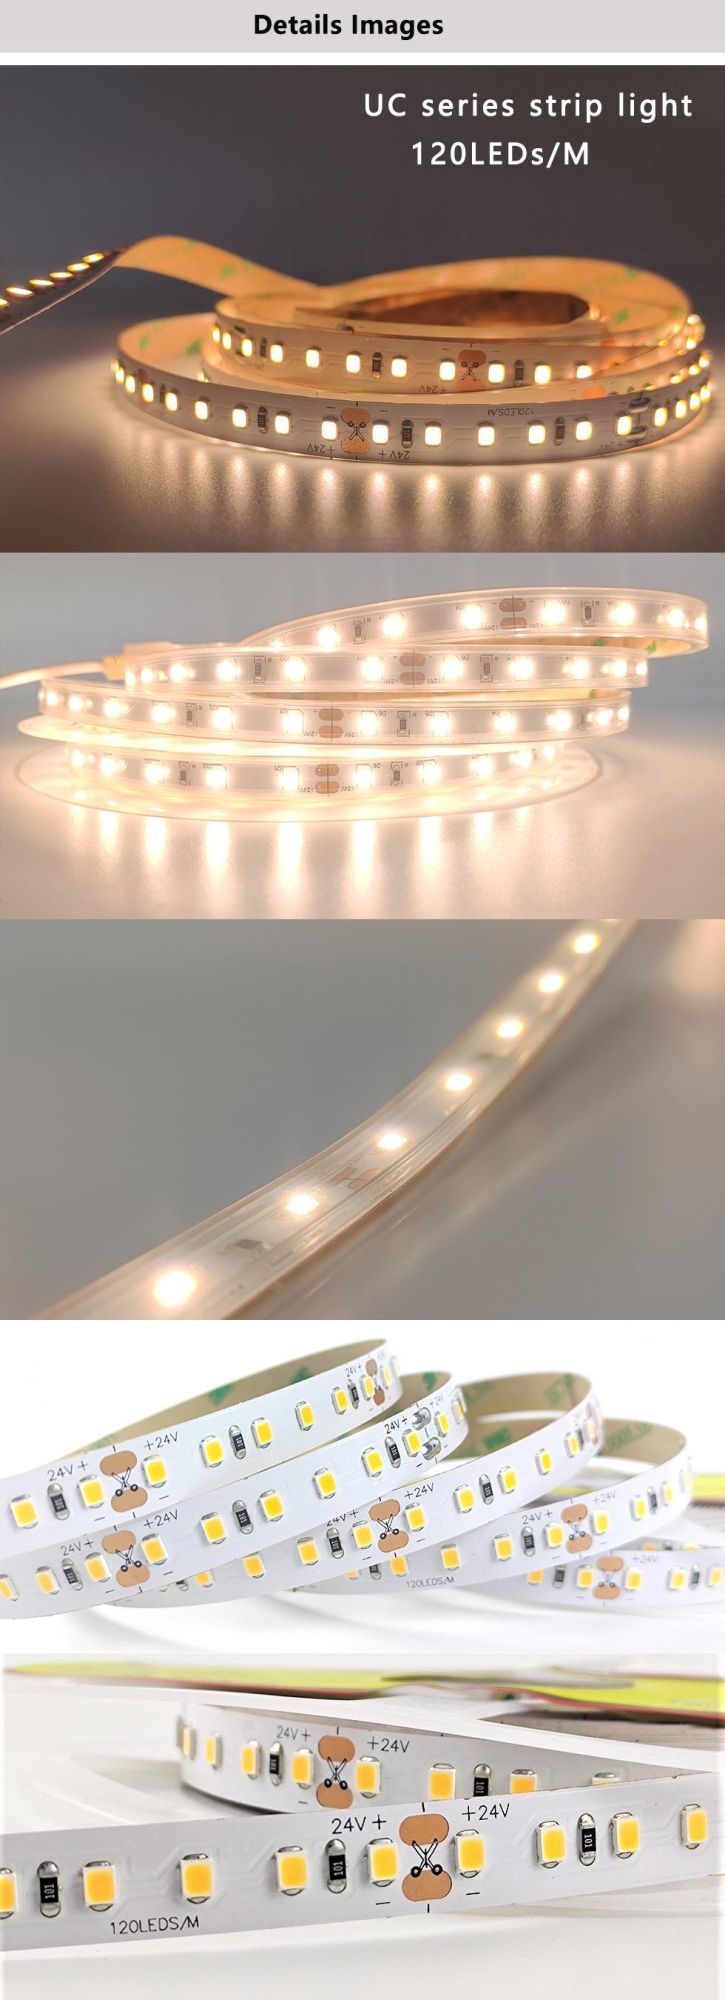 Ceiling LED Strip Light